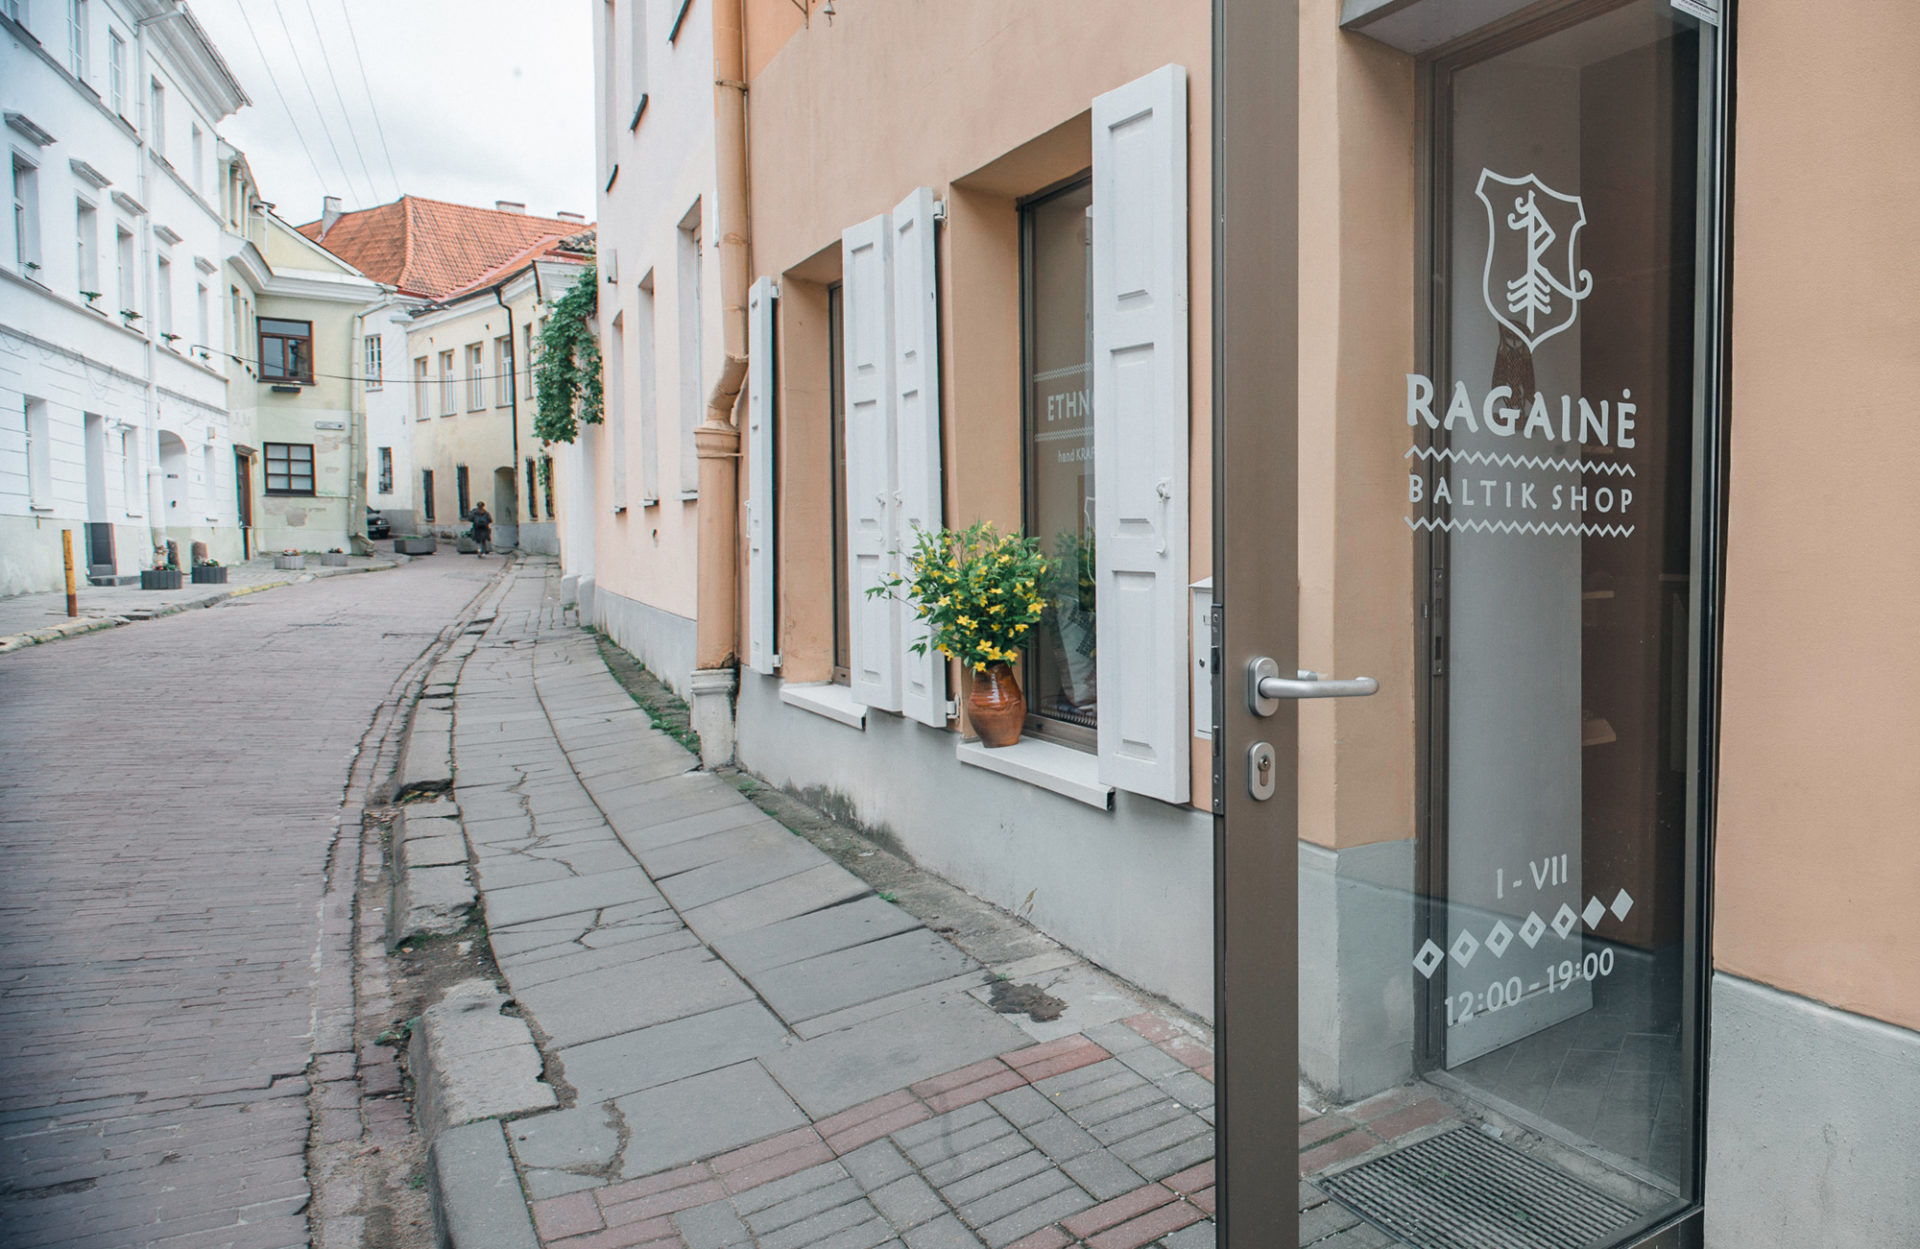 Ragainė – Baltik Shop - 1 of 6